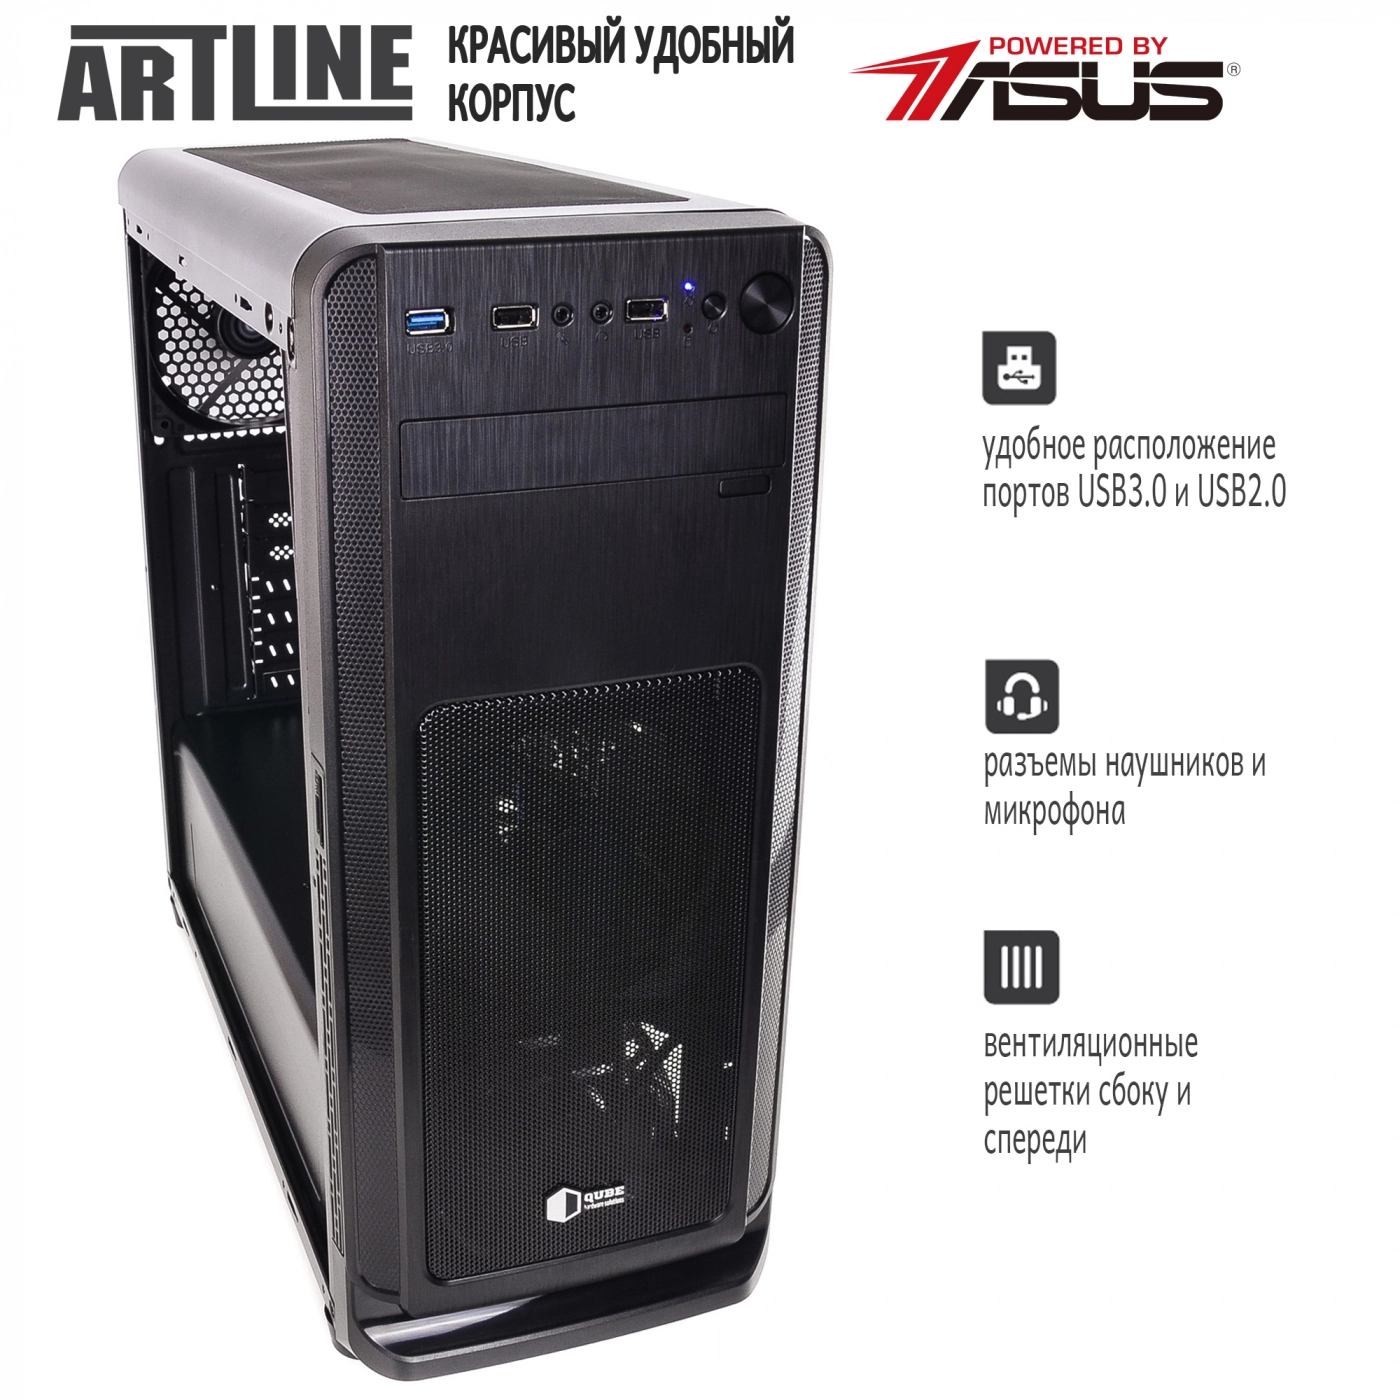 Купить Сервер ARTLINE Business T65v06 - фото 4